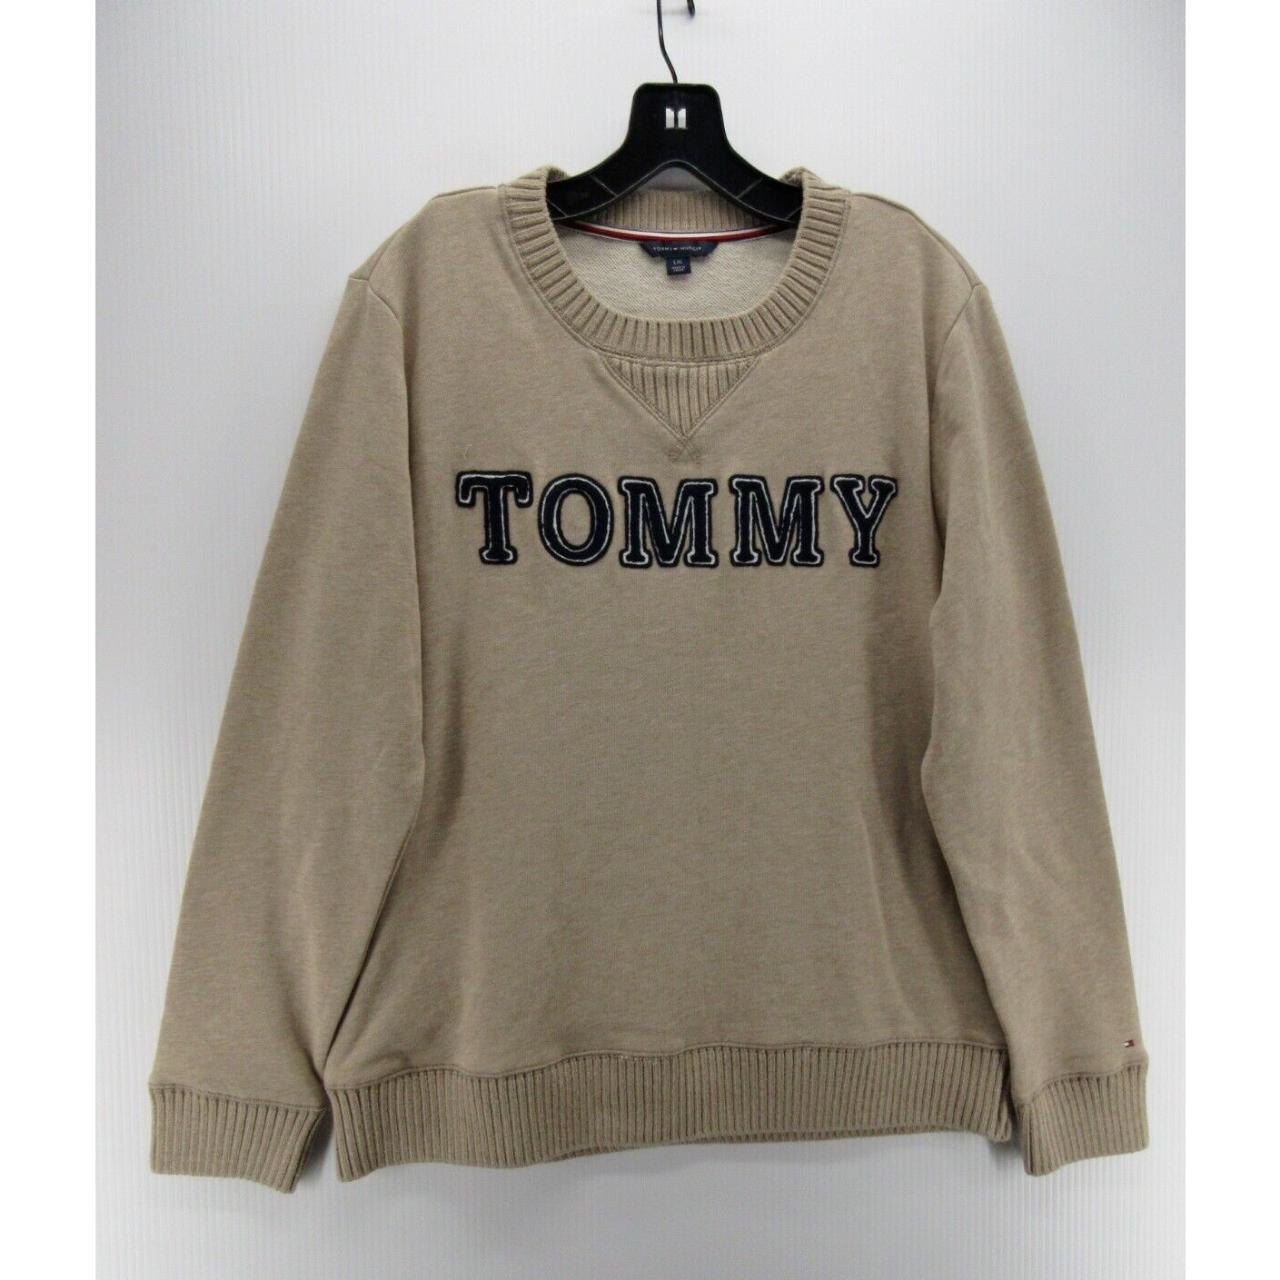 Brise effektivt økse Tommy Hilfiger Sweater Women Large Beige Pullover... - Depop